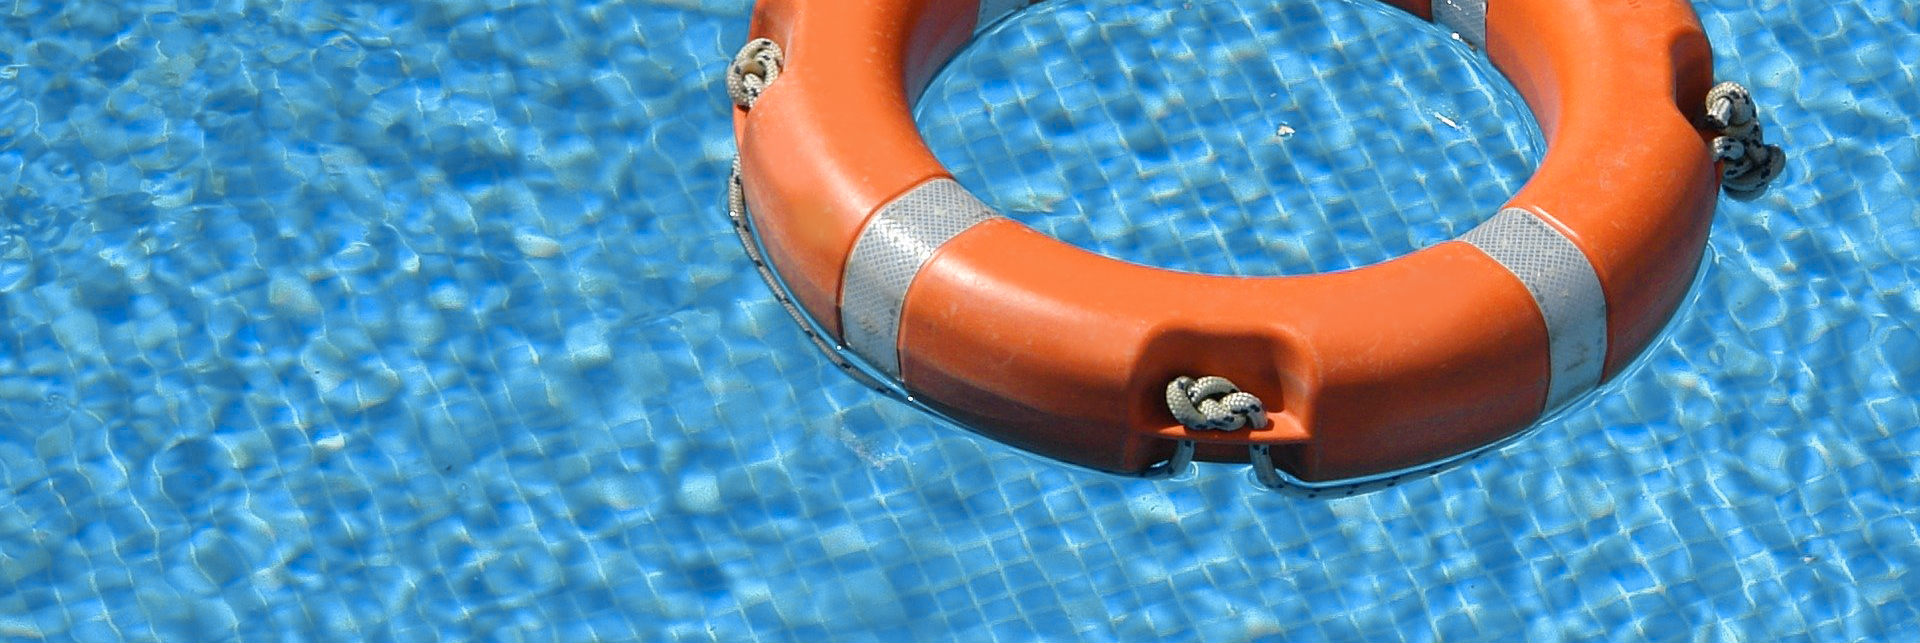 Segurança nas piscinas